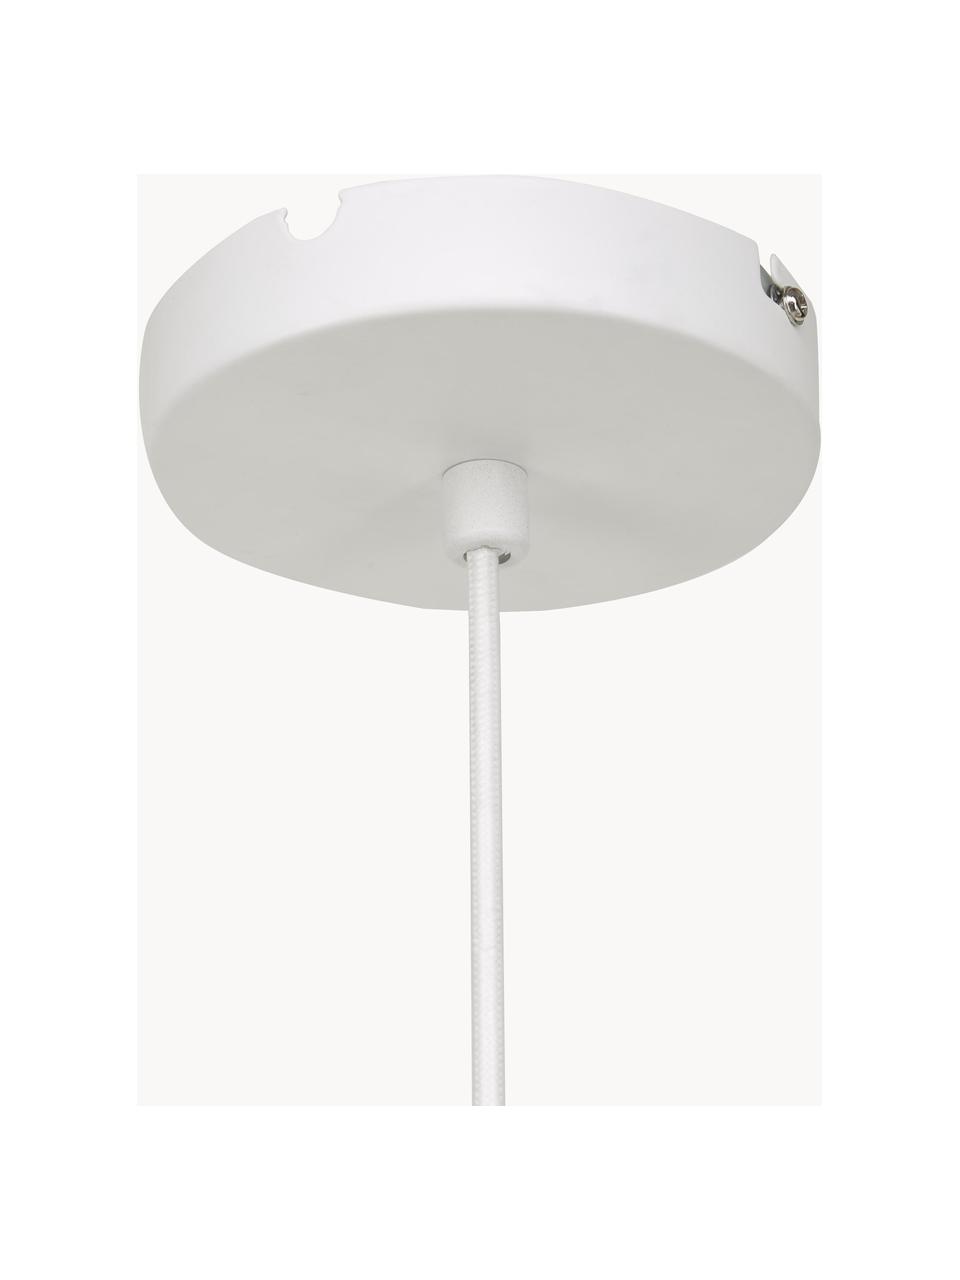 Lámpara de techo grande Alia, Pantalla: metal recubierto, Anclaje: metal, Cable: cubierto en tela, Blanco, Ø 70 x Al 32 cm